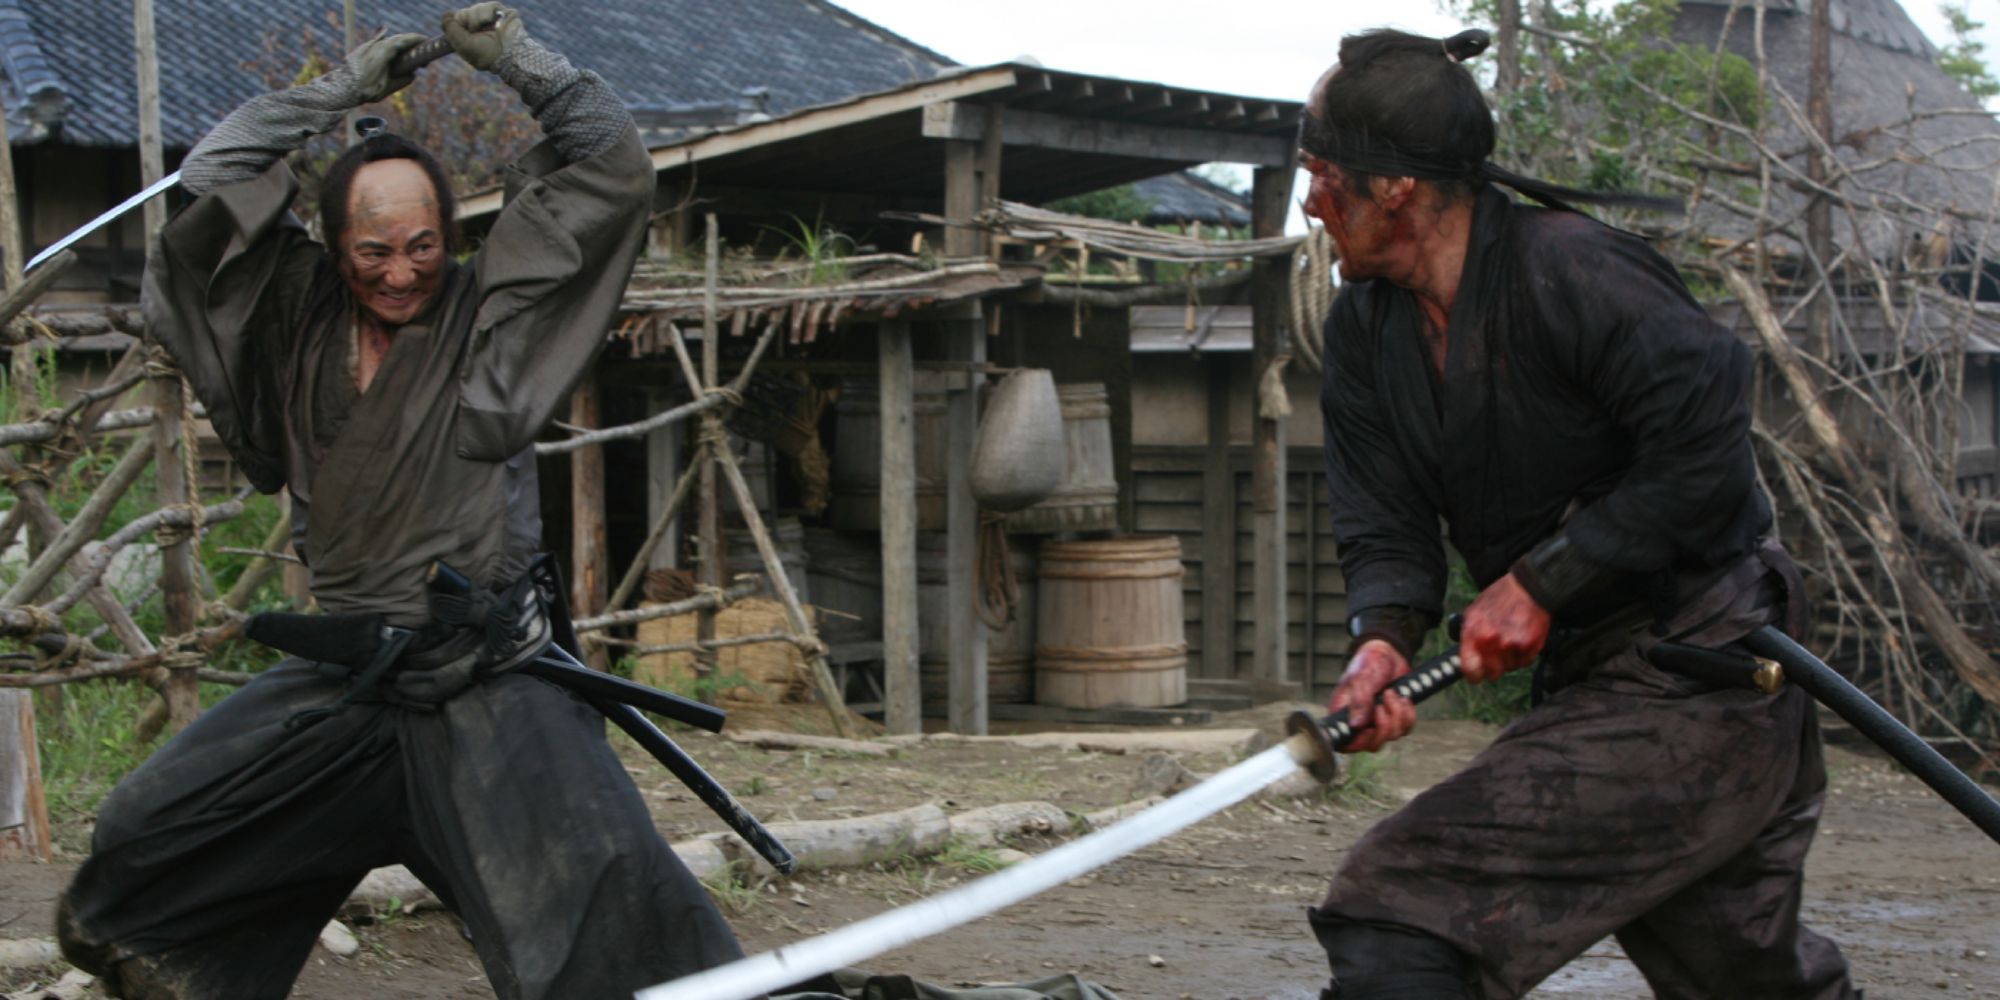 A battle between two samurai in 13 Assassins